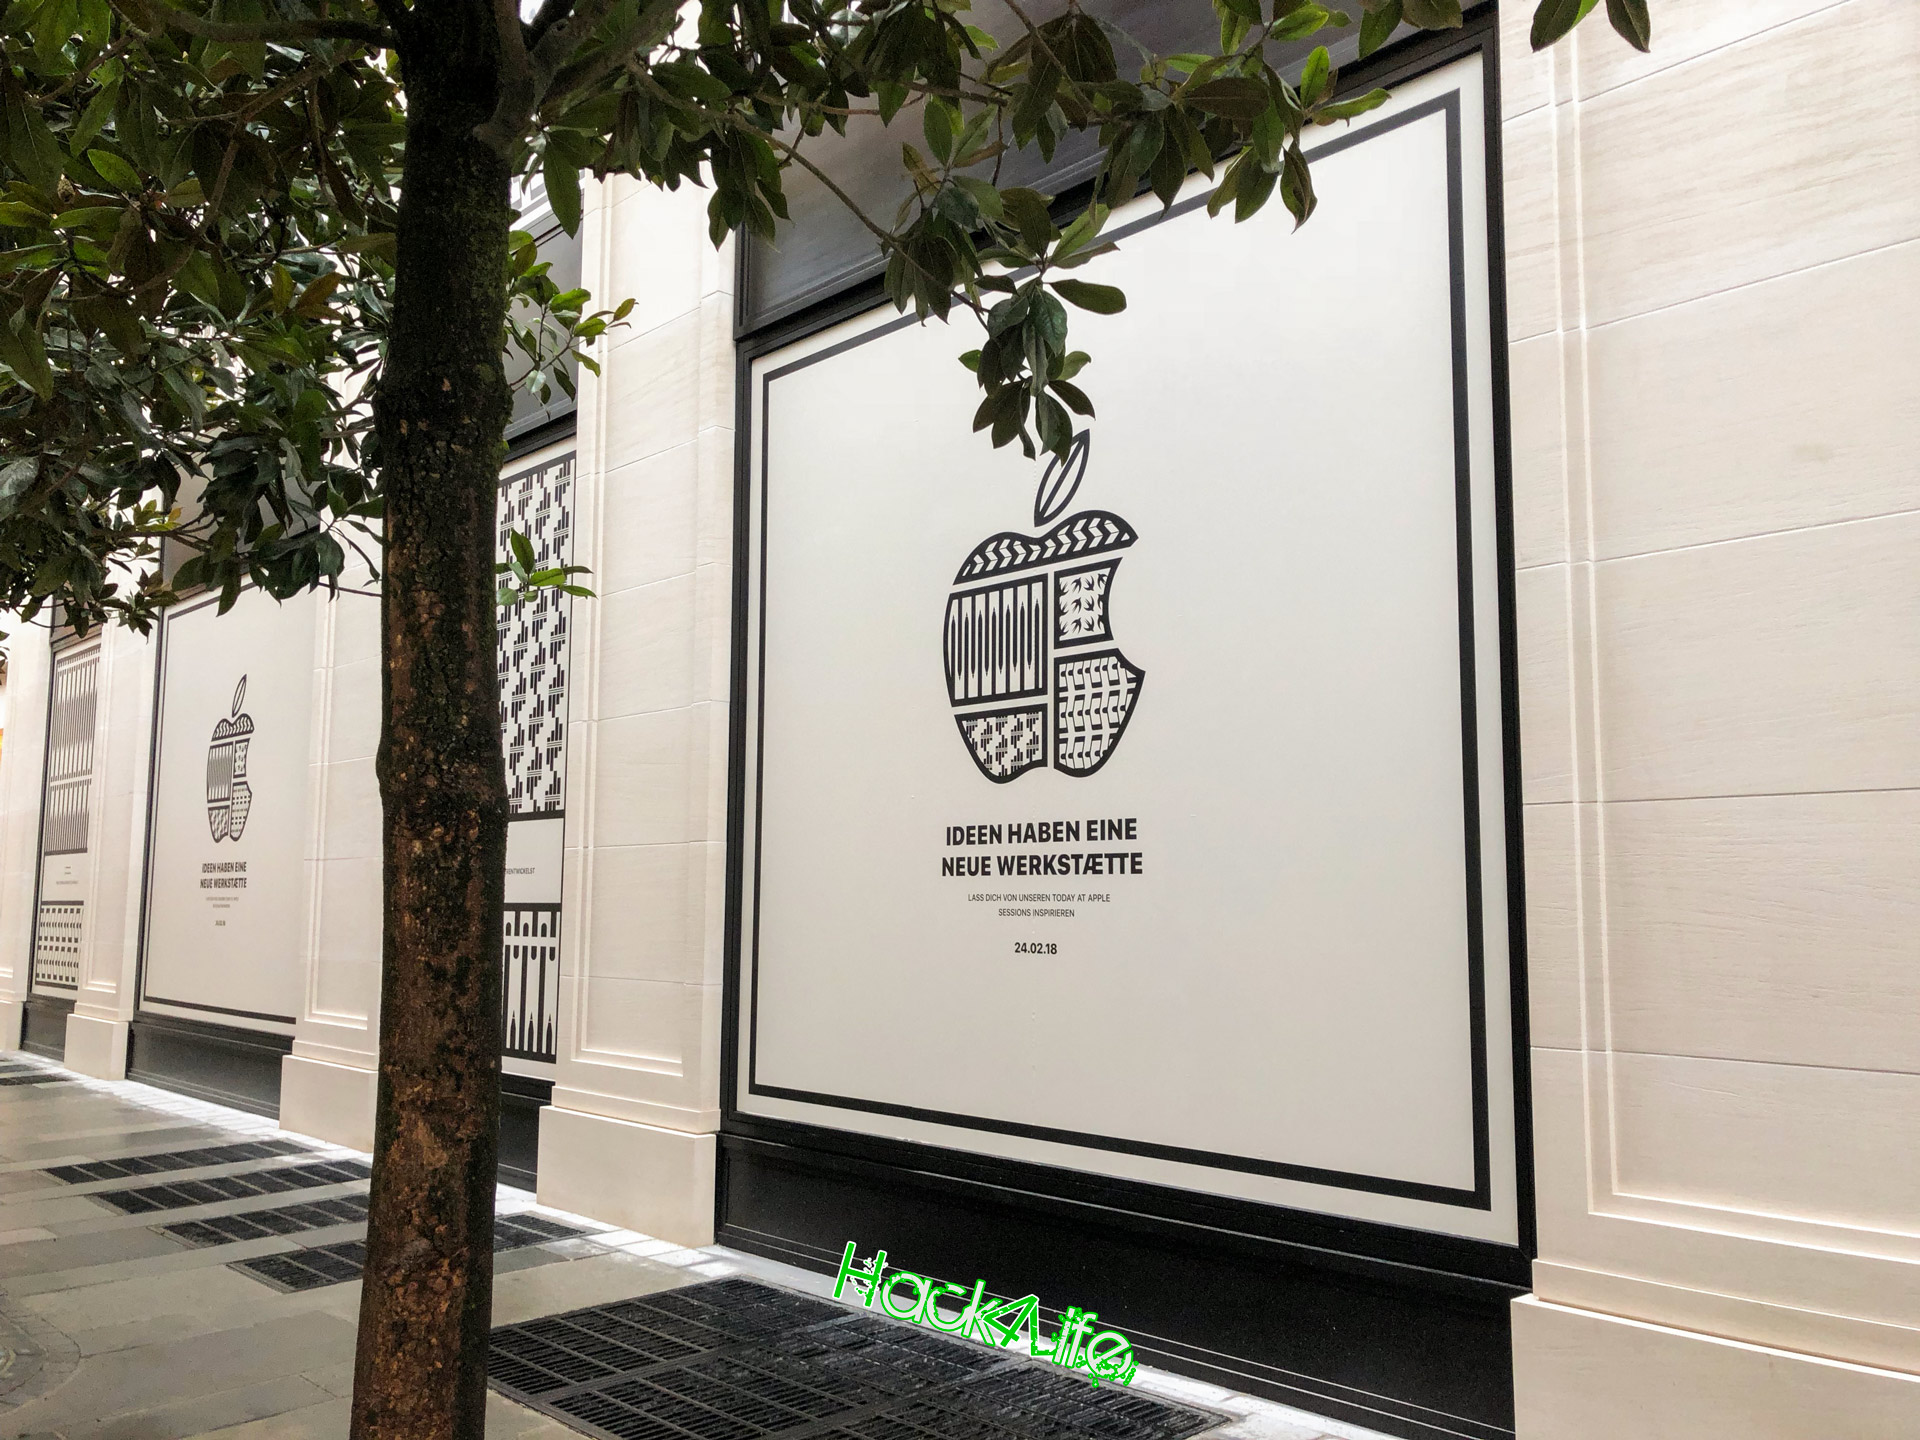 Apple Store Kärntnerstraße, Wien, Hack4Life, Fabian Geissler